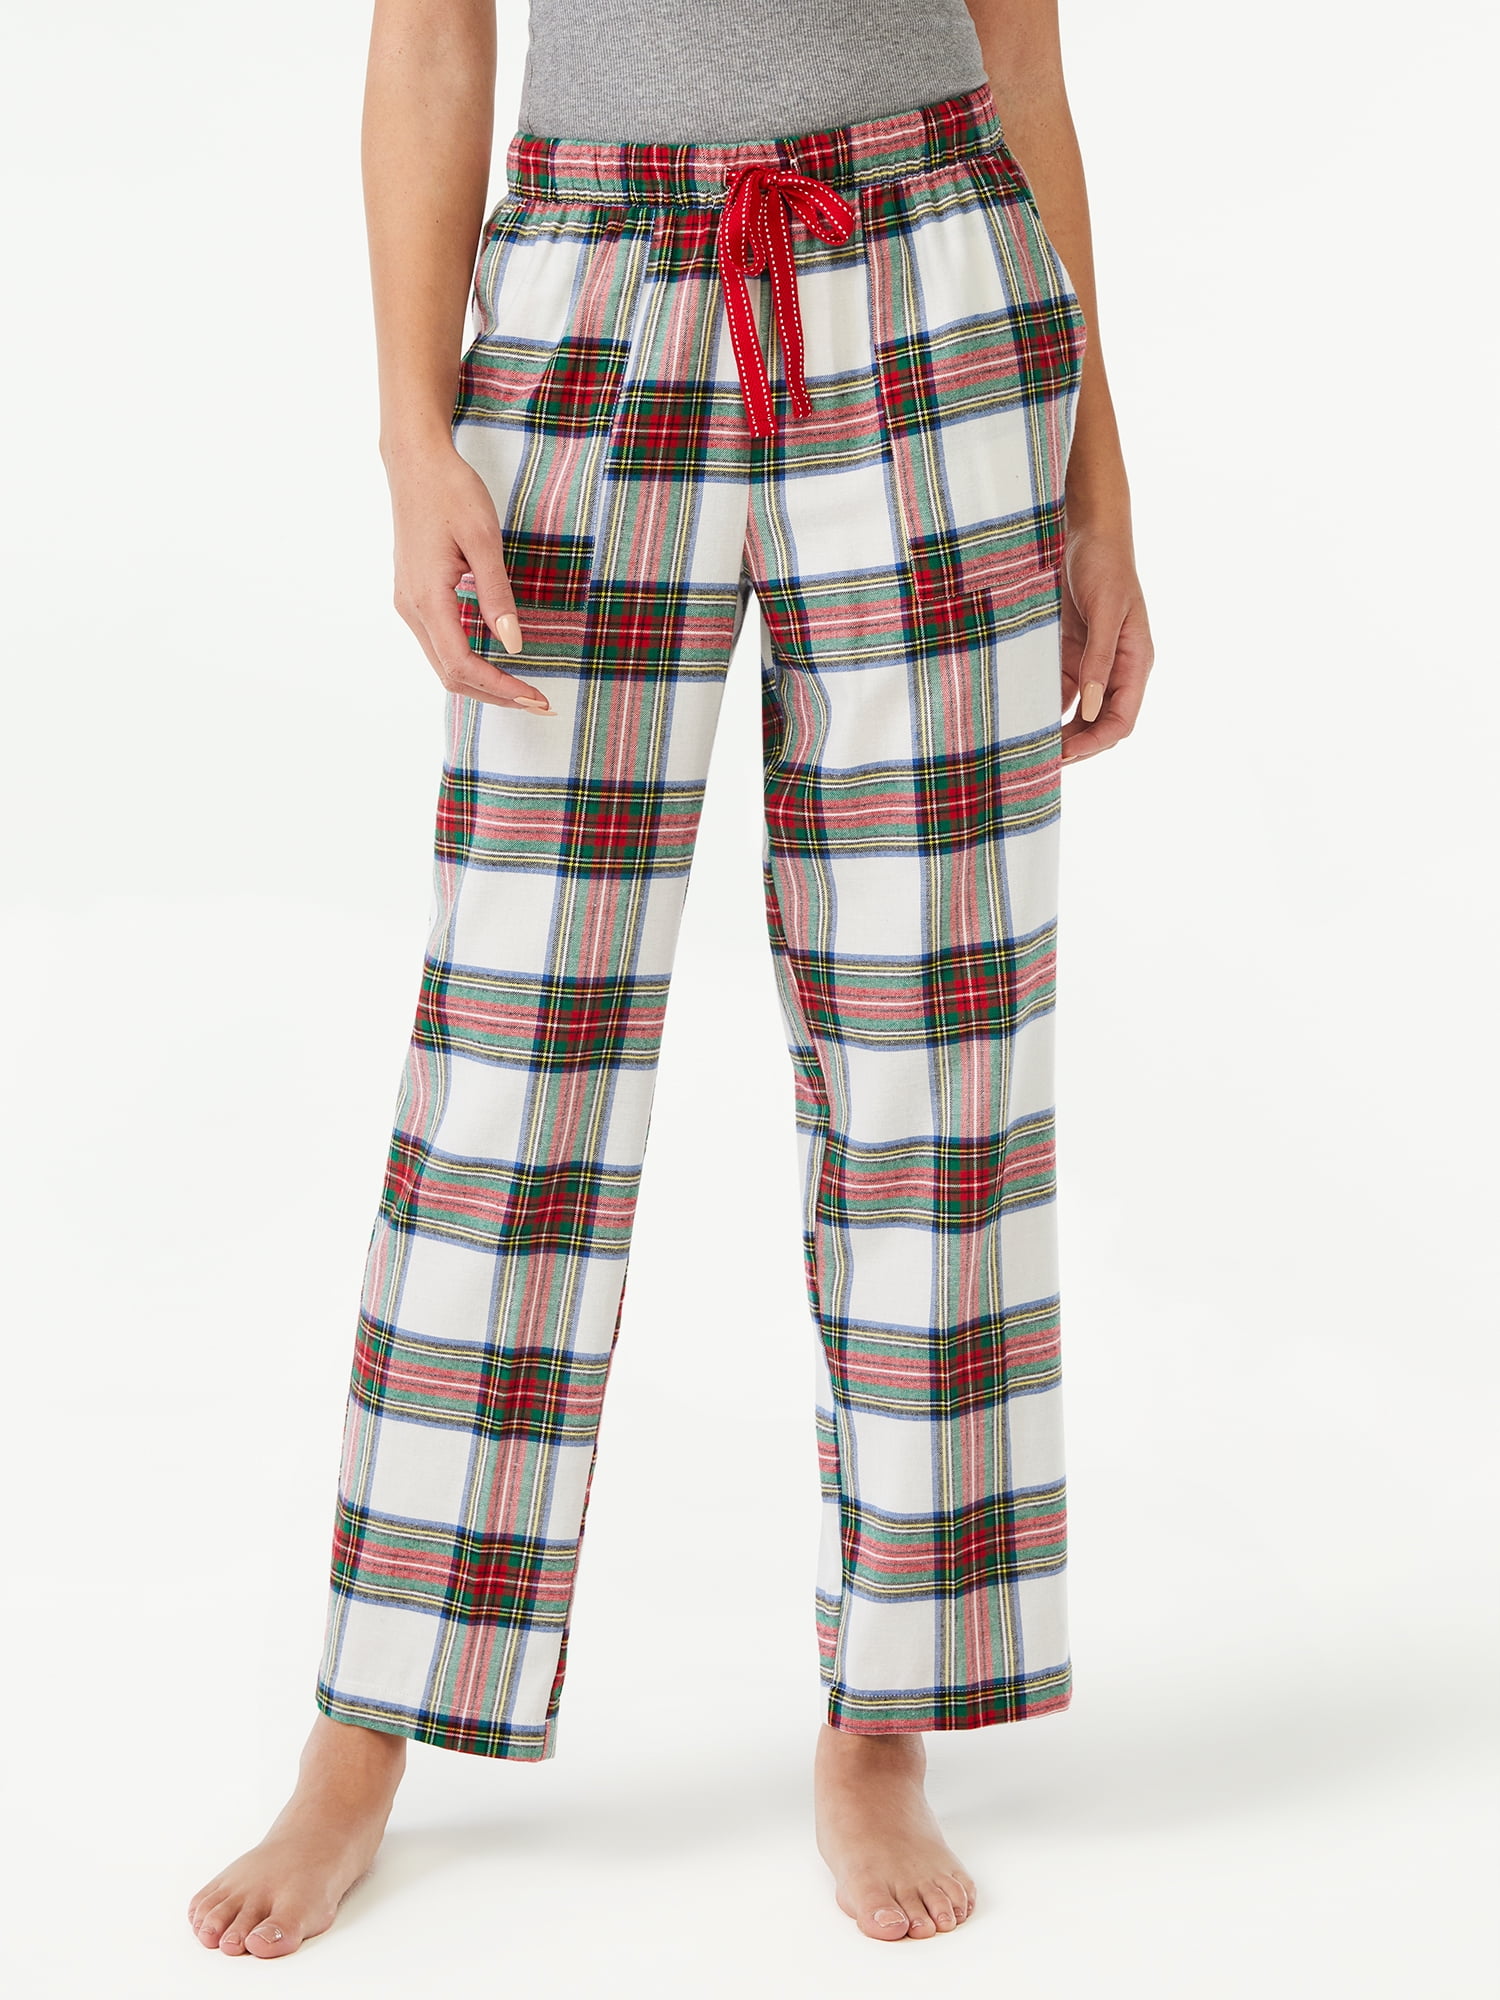 Joyspun Women’s Flannel Lounge Pants, Sizes S to 3X